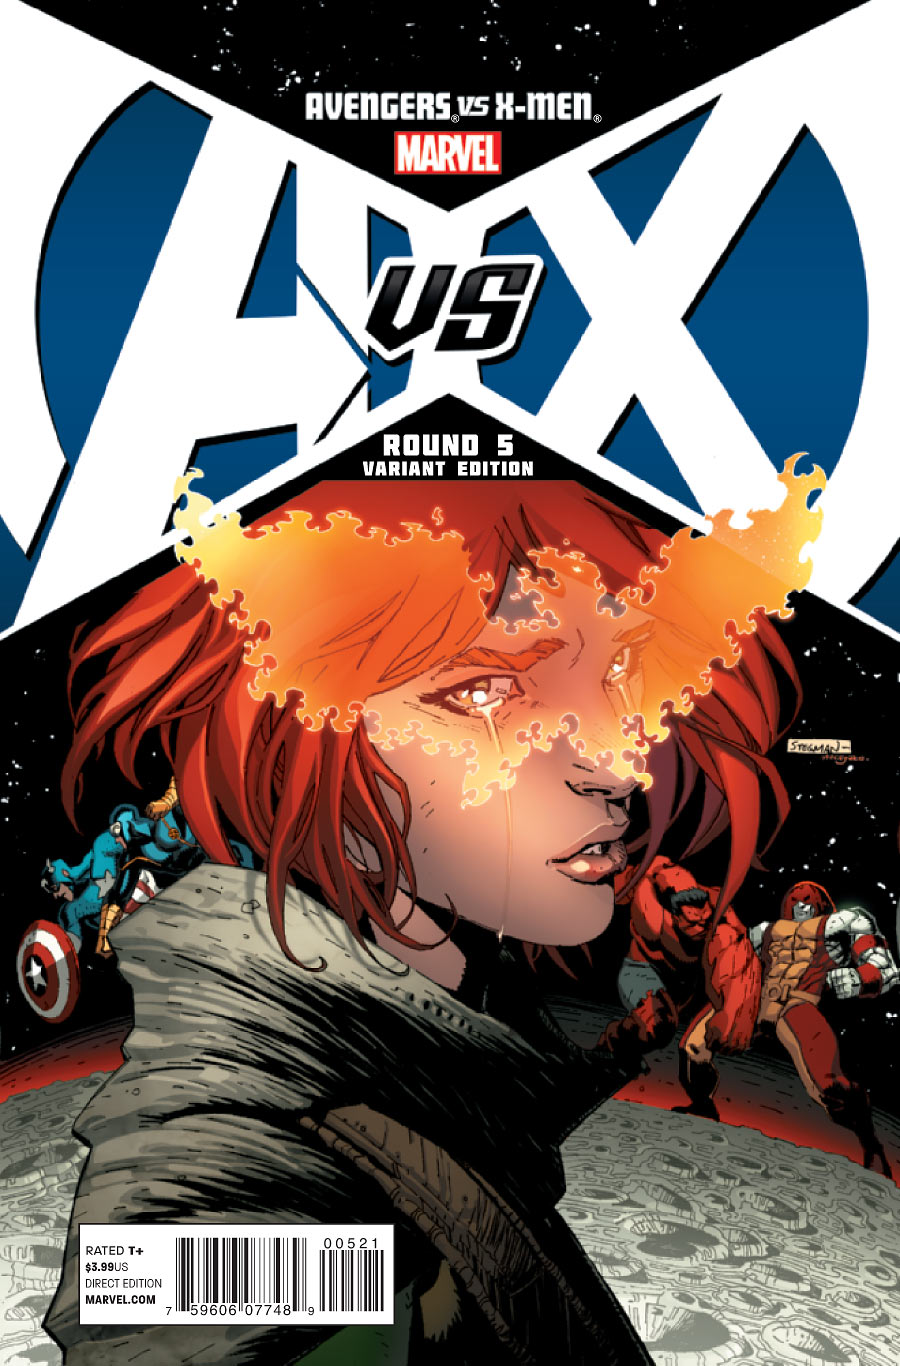 AVENGERS VS X-MEN #5 - AvX - Vingadores Vs X-Men - Blog Farofeiros